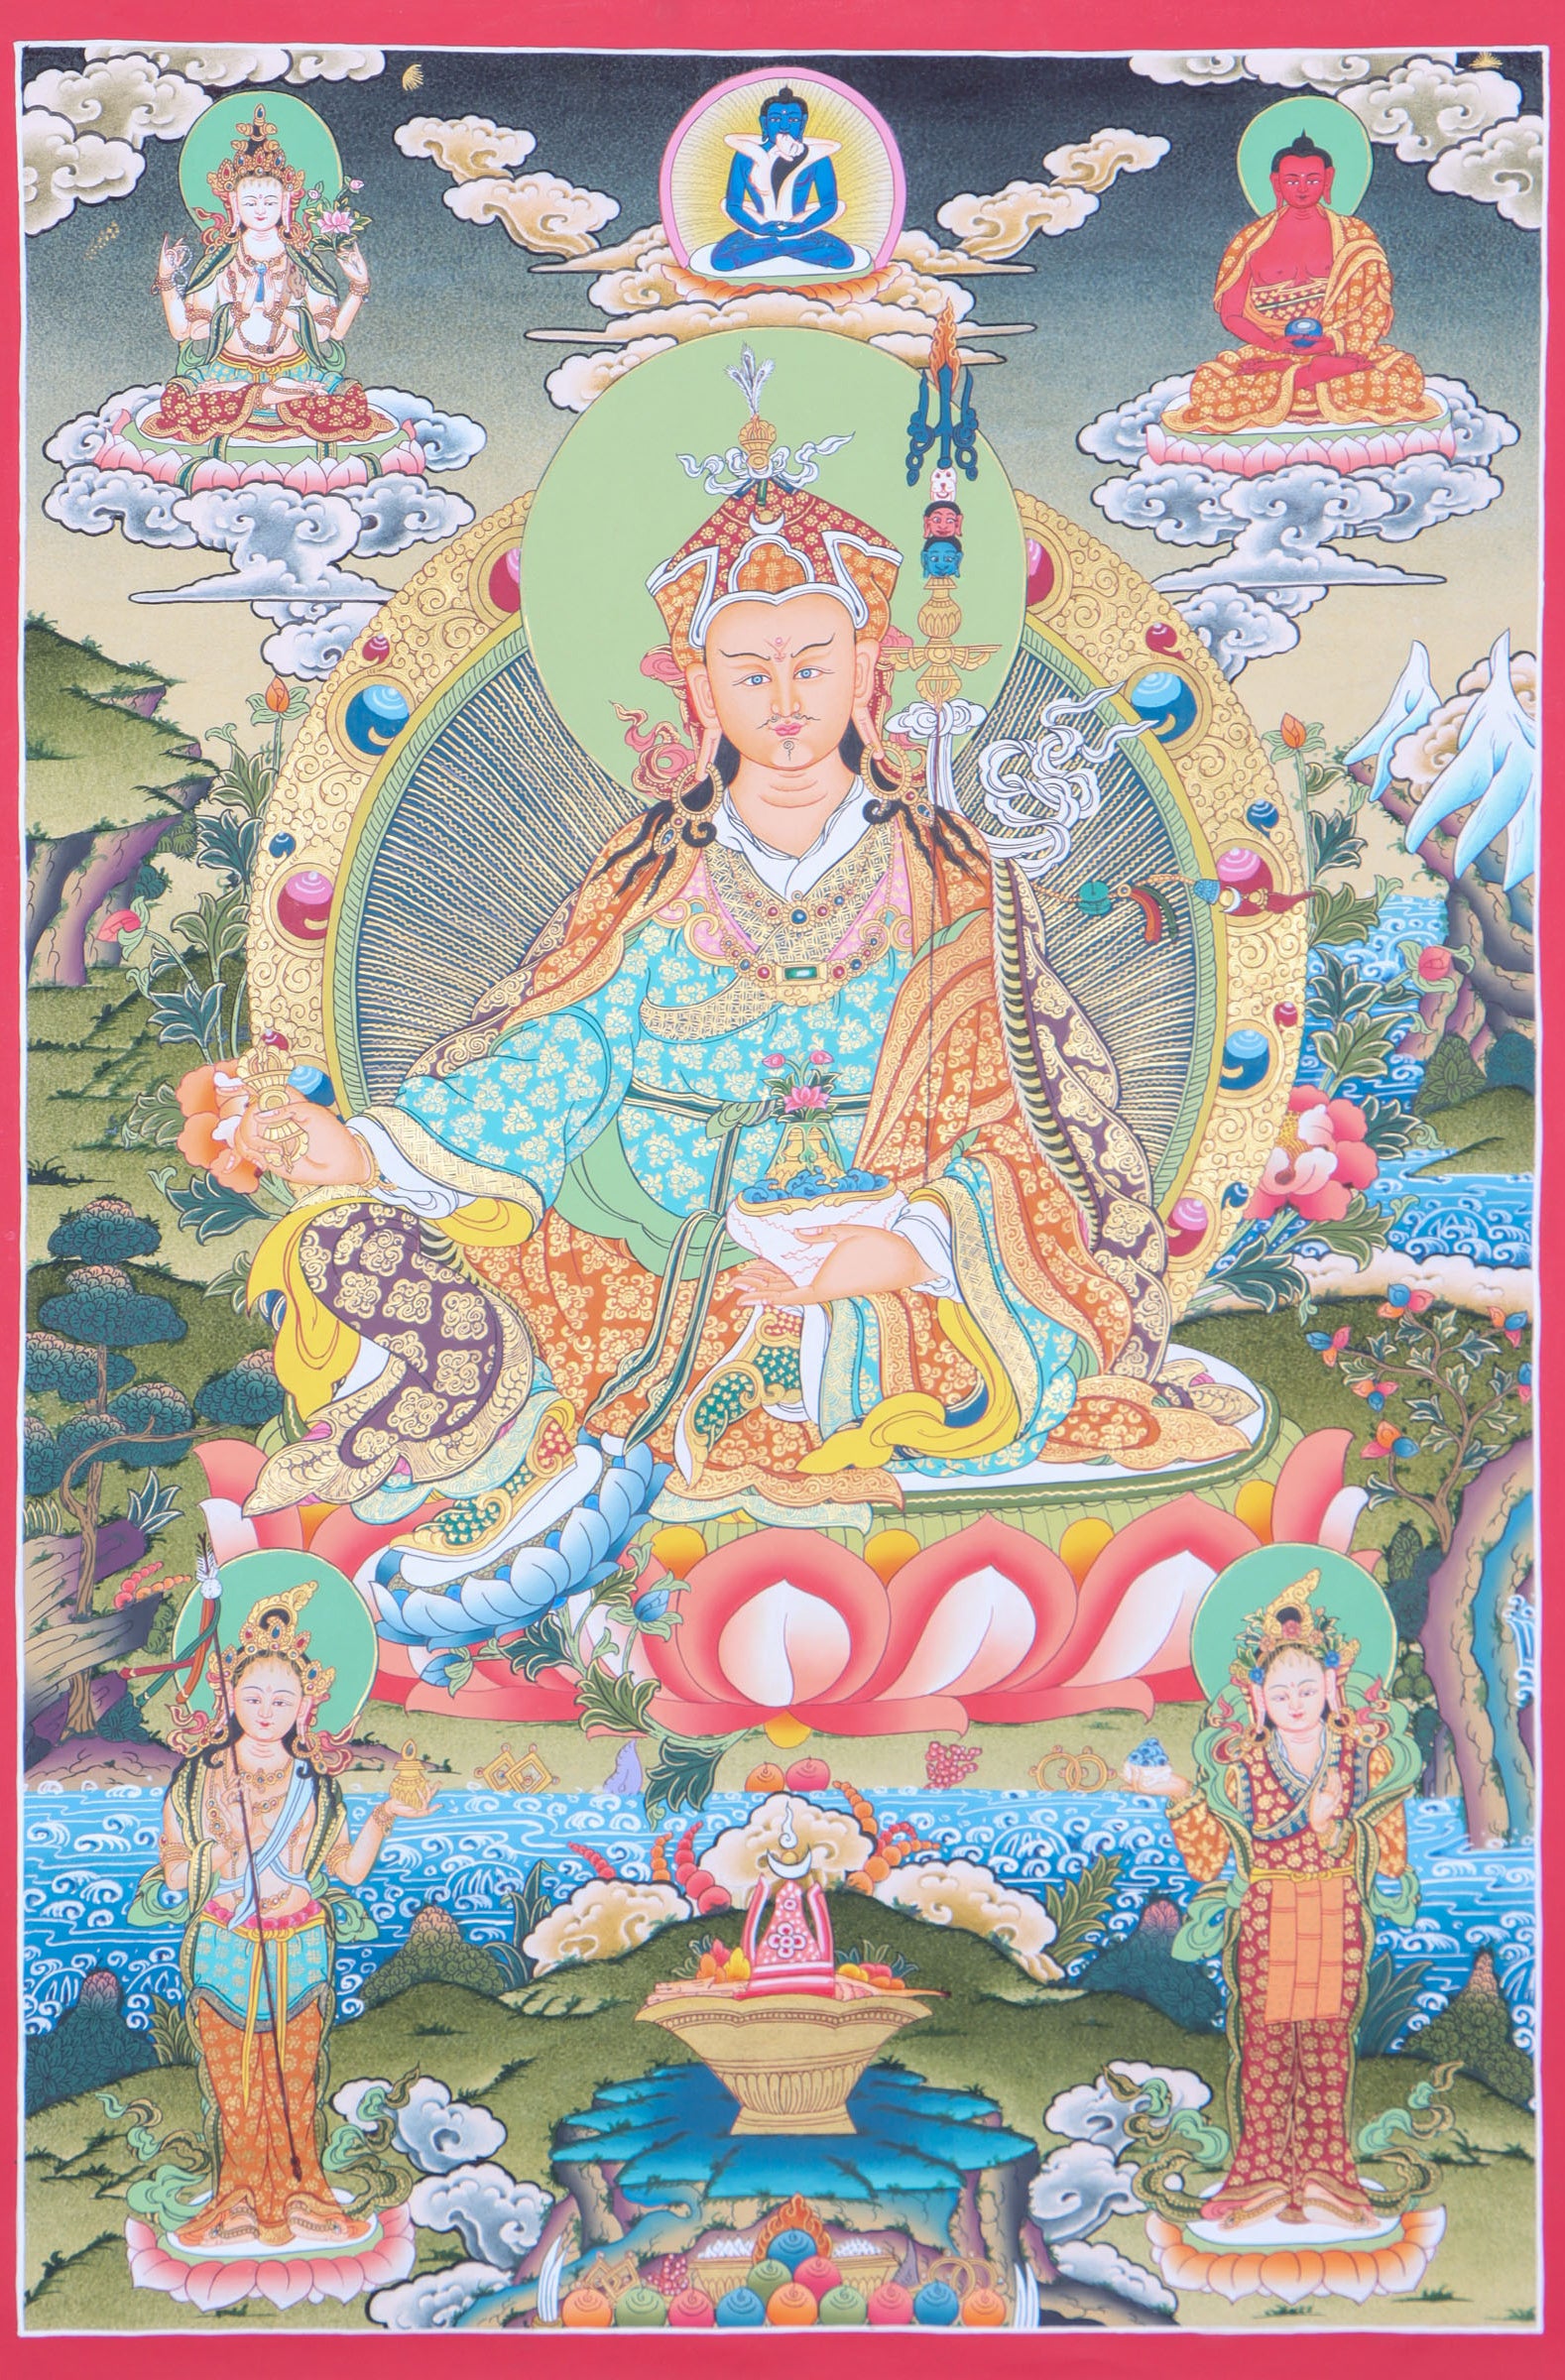 Guru Padmasambhava Thangka Painting for buddhist ritual.